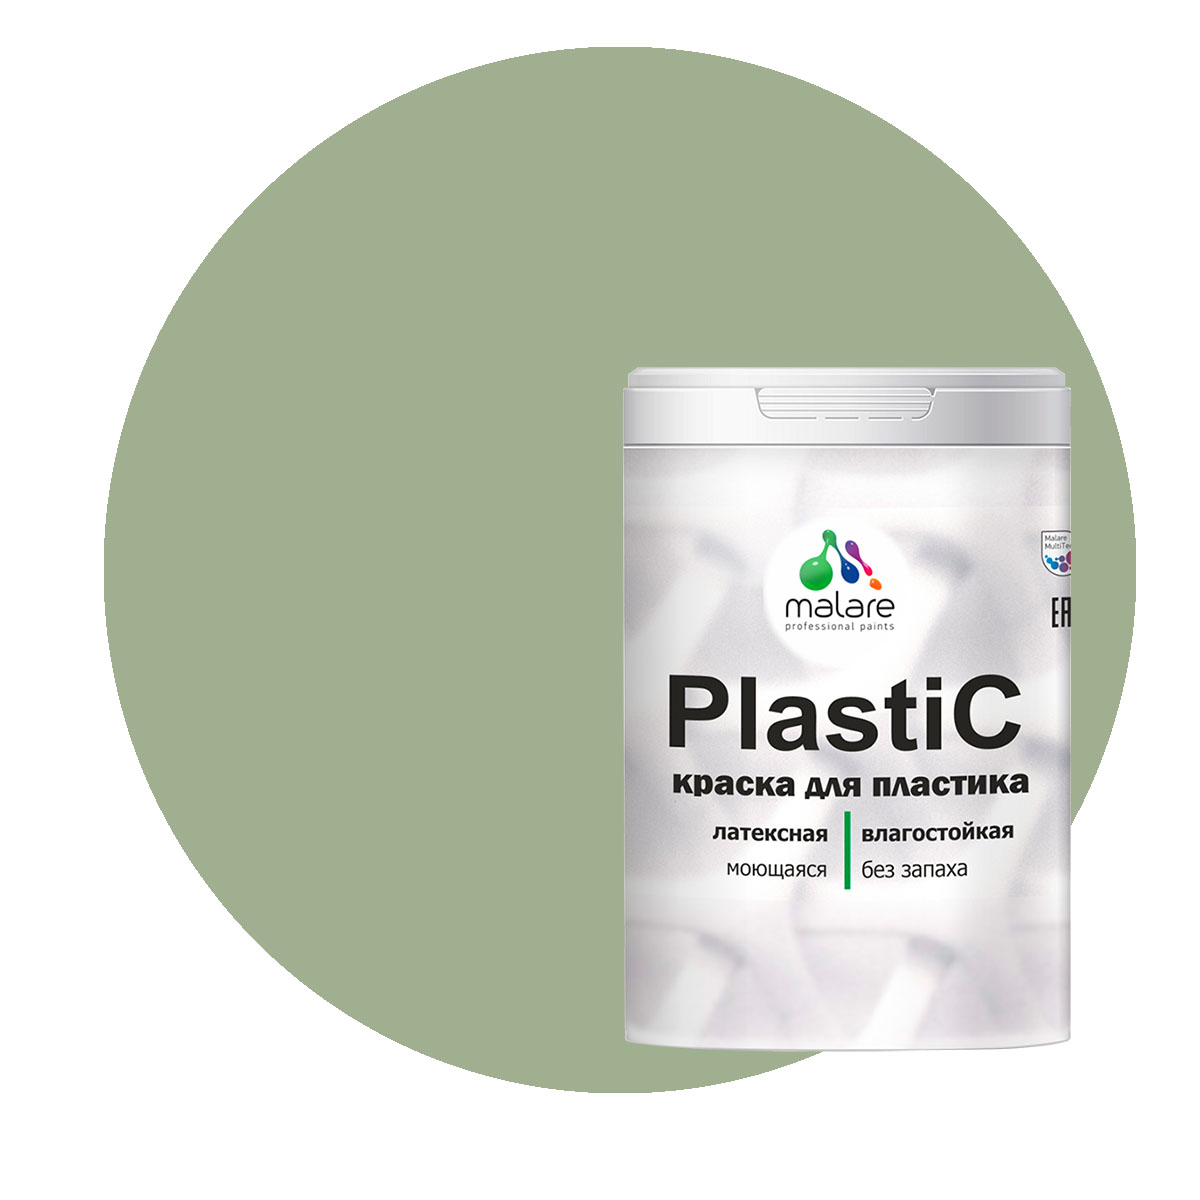 Краска Malare PlastiC для пластика, ПВХ, для сайдинга, лиственный зеленый, 2 кг. краска malare plastic для пластика пвх для сайдинга зеленый мичиган 2 кг